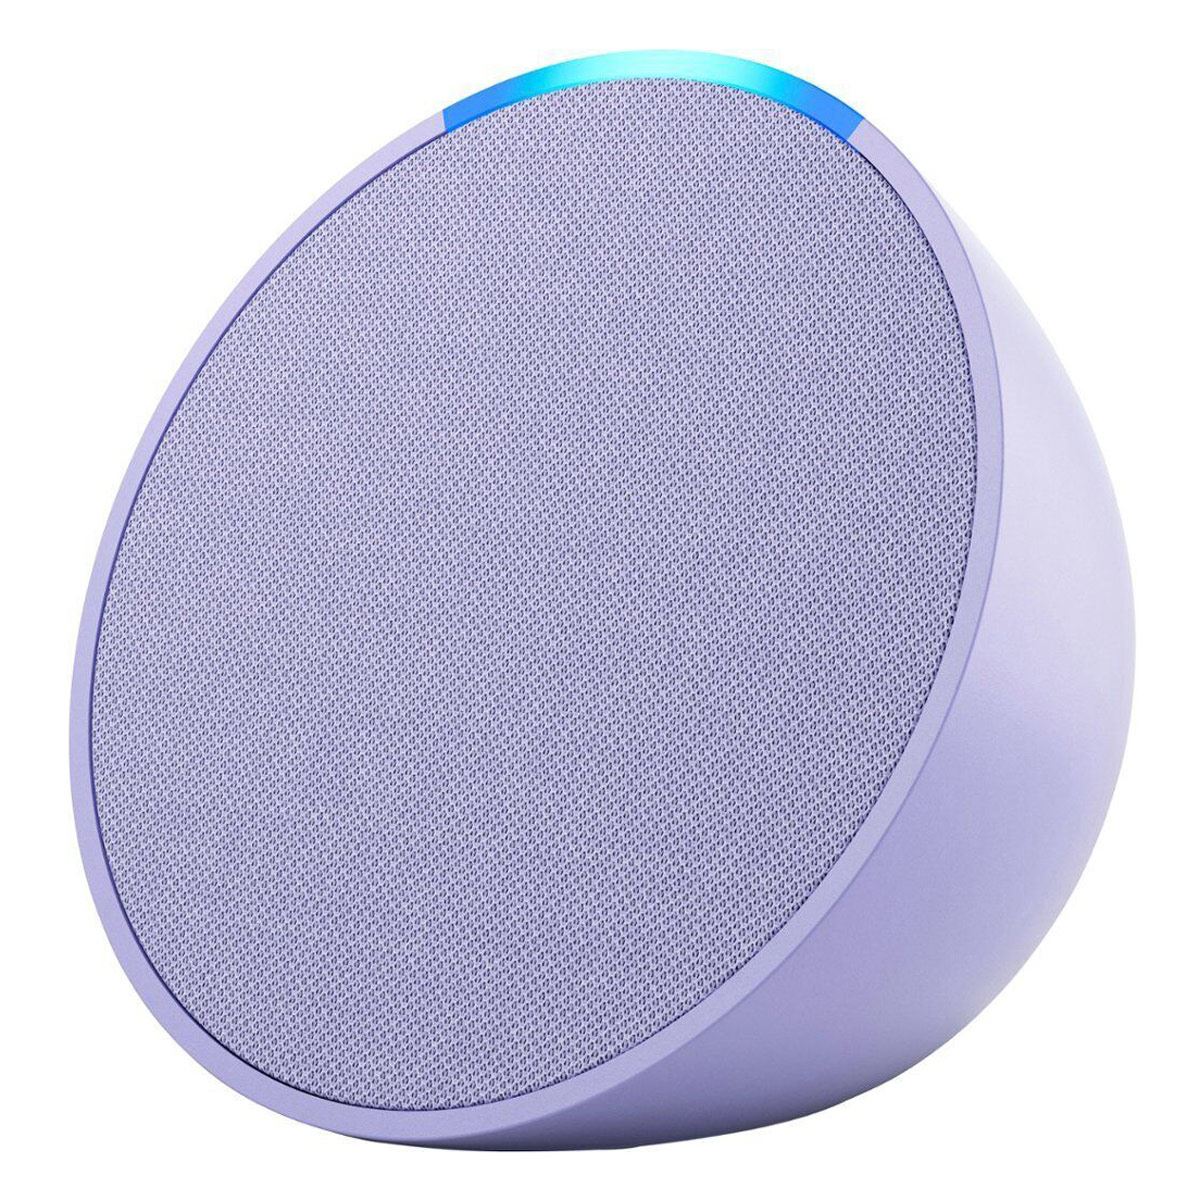 Las mejores ofertas en Bluetooth  Alexa humidificadores